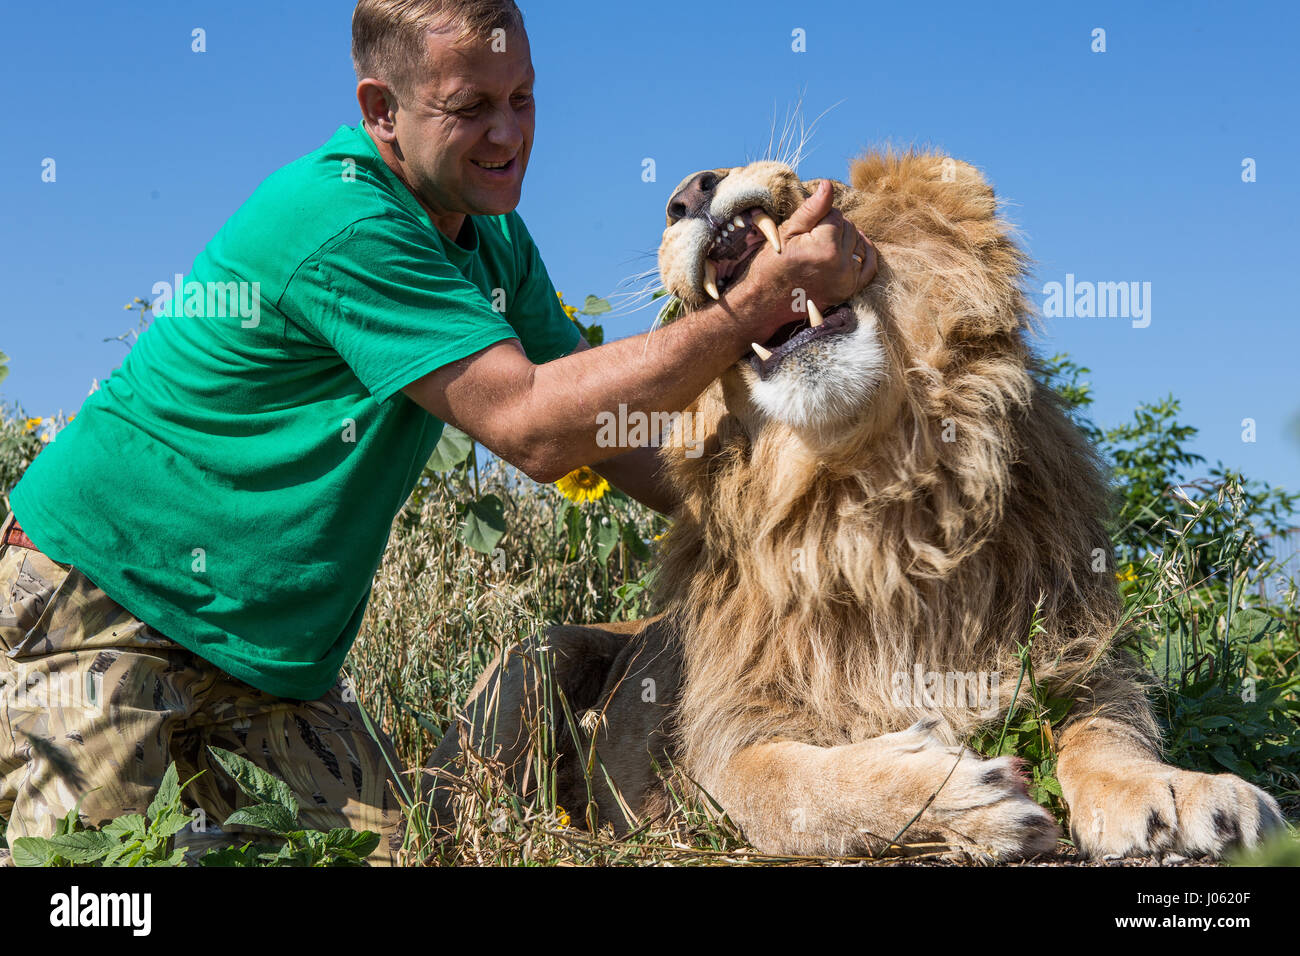 Oleg Zubkov mit seinem Arm in den Mund des Löwes. ATEMBERAUBENDE Bilder von wilden Löwen und furchtlosen Menschen sitzen übereinander in einem Feld wurden von einem überrascht Fotografen eingefangen. Die surrealen Bilder zeigen stellen die 418-Pfund-Löwen begrüßen ihren menschlichen Begleiter wie sie gerne für Selfies, einander küssen auf den Mund und ein weißer Löwe streckt sogar eine helfende Pfote zu einem Mann in einem Teich schwimmen.  Andere Bilder zeigen die Löwen liebevoll Gruß Menschen aus ihren Autos und ein unglaubliches Bild, ein Mann tapfer legt seinen Arm im Mund des Tieres für die Kamera posieren. Die sp Stockfoto